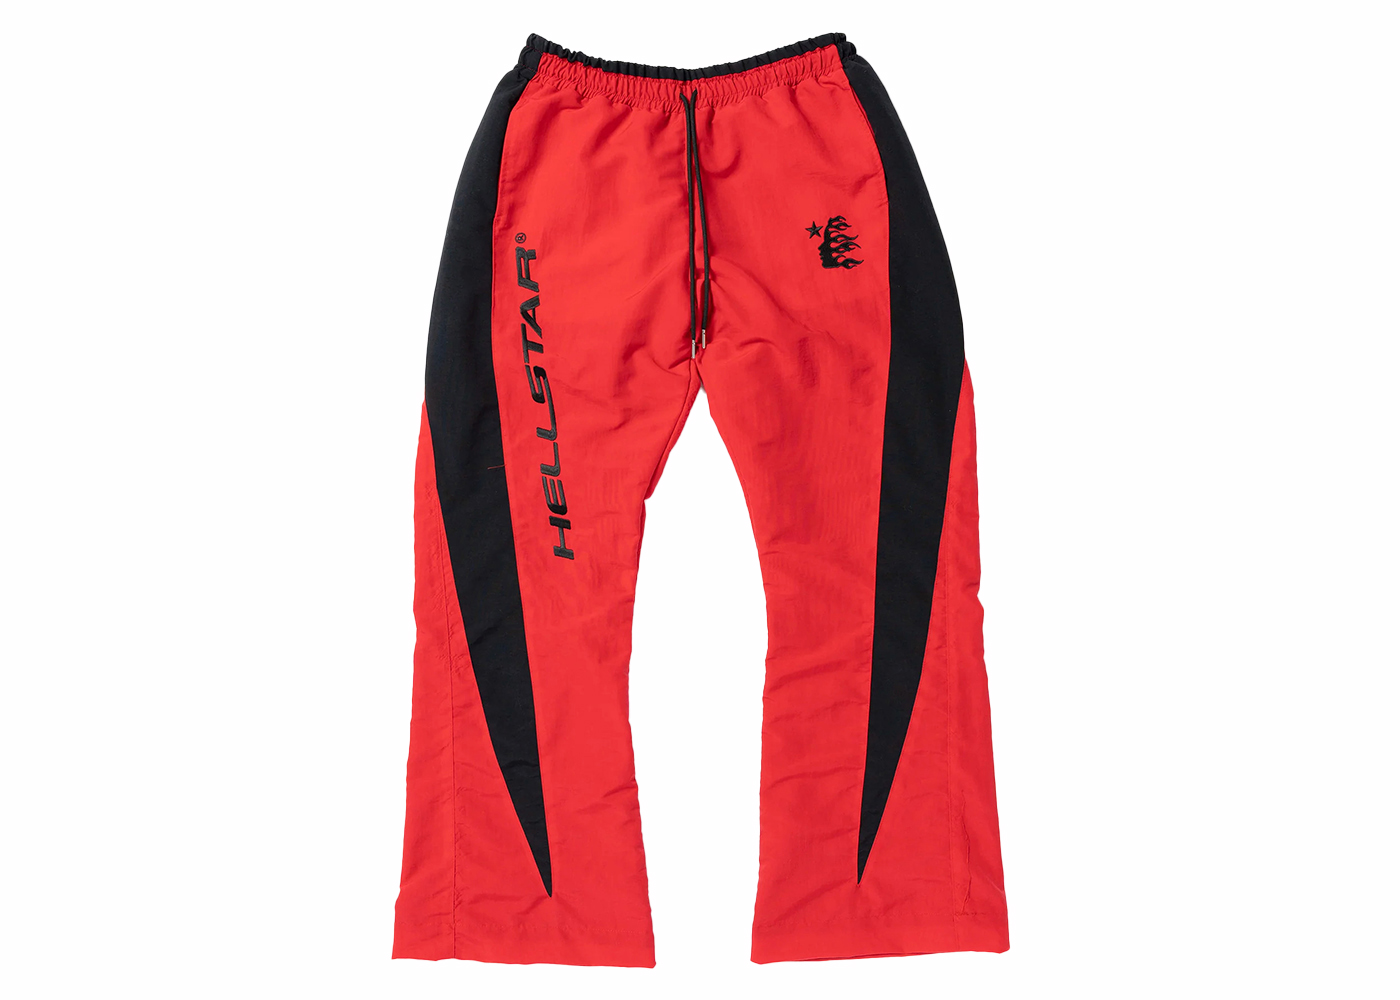 MサイズHellstar Thriller Red Track Jacket Pants